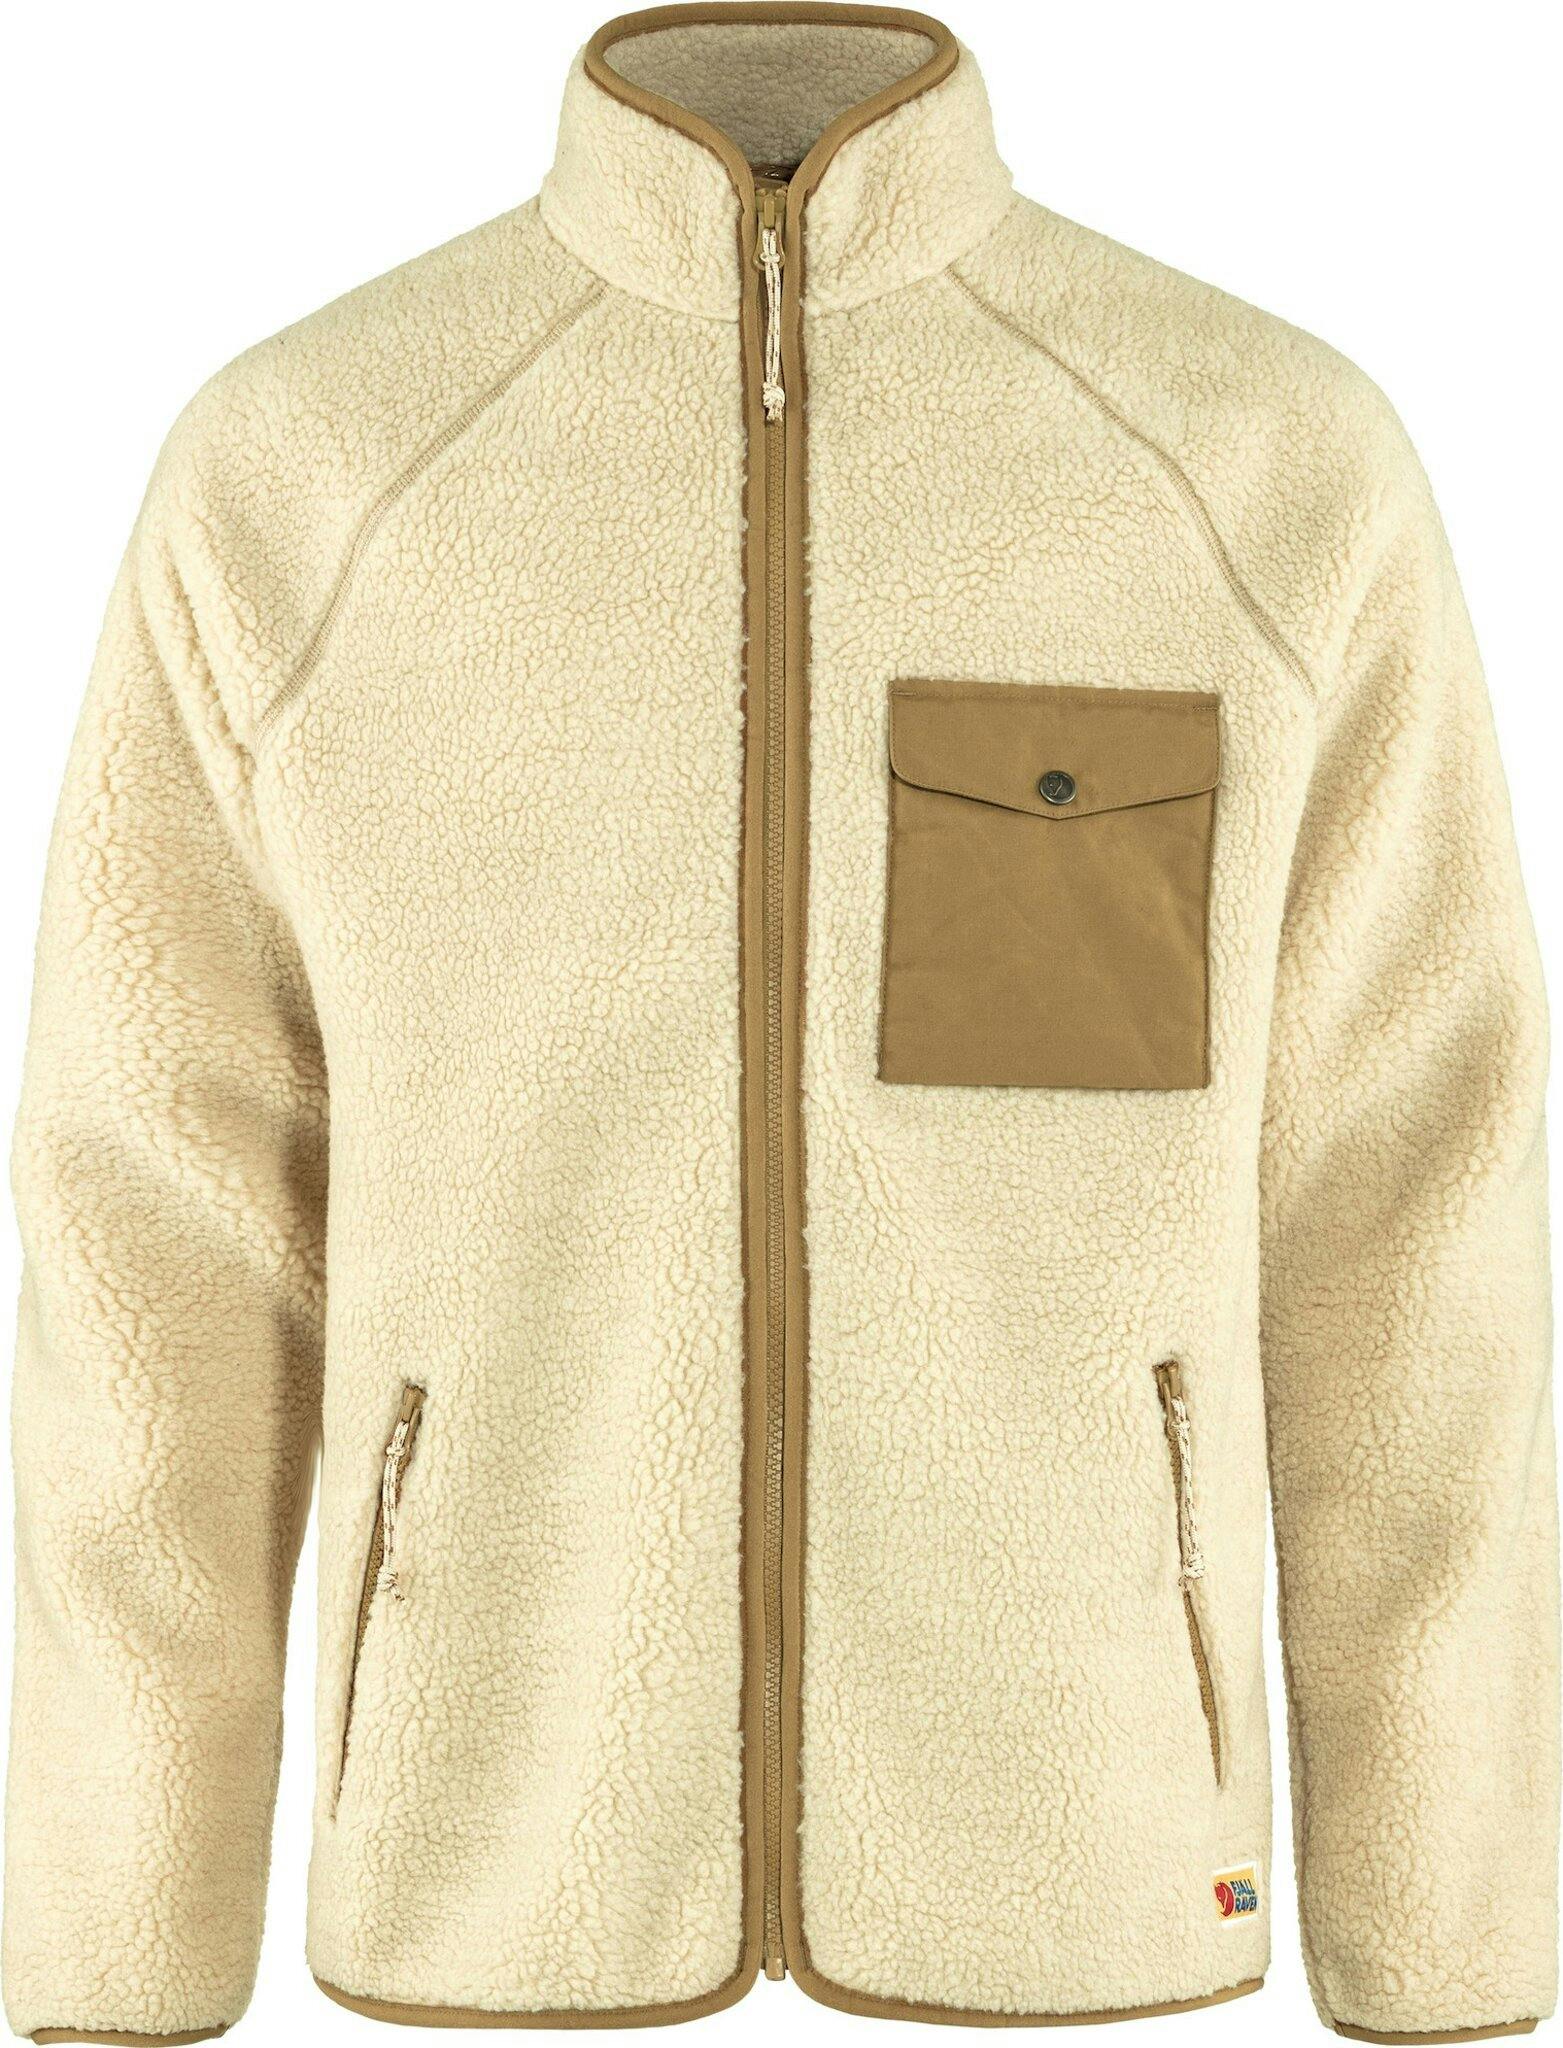 Product image for Vardag Pile Fleece Top - Men's